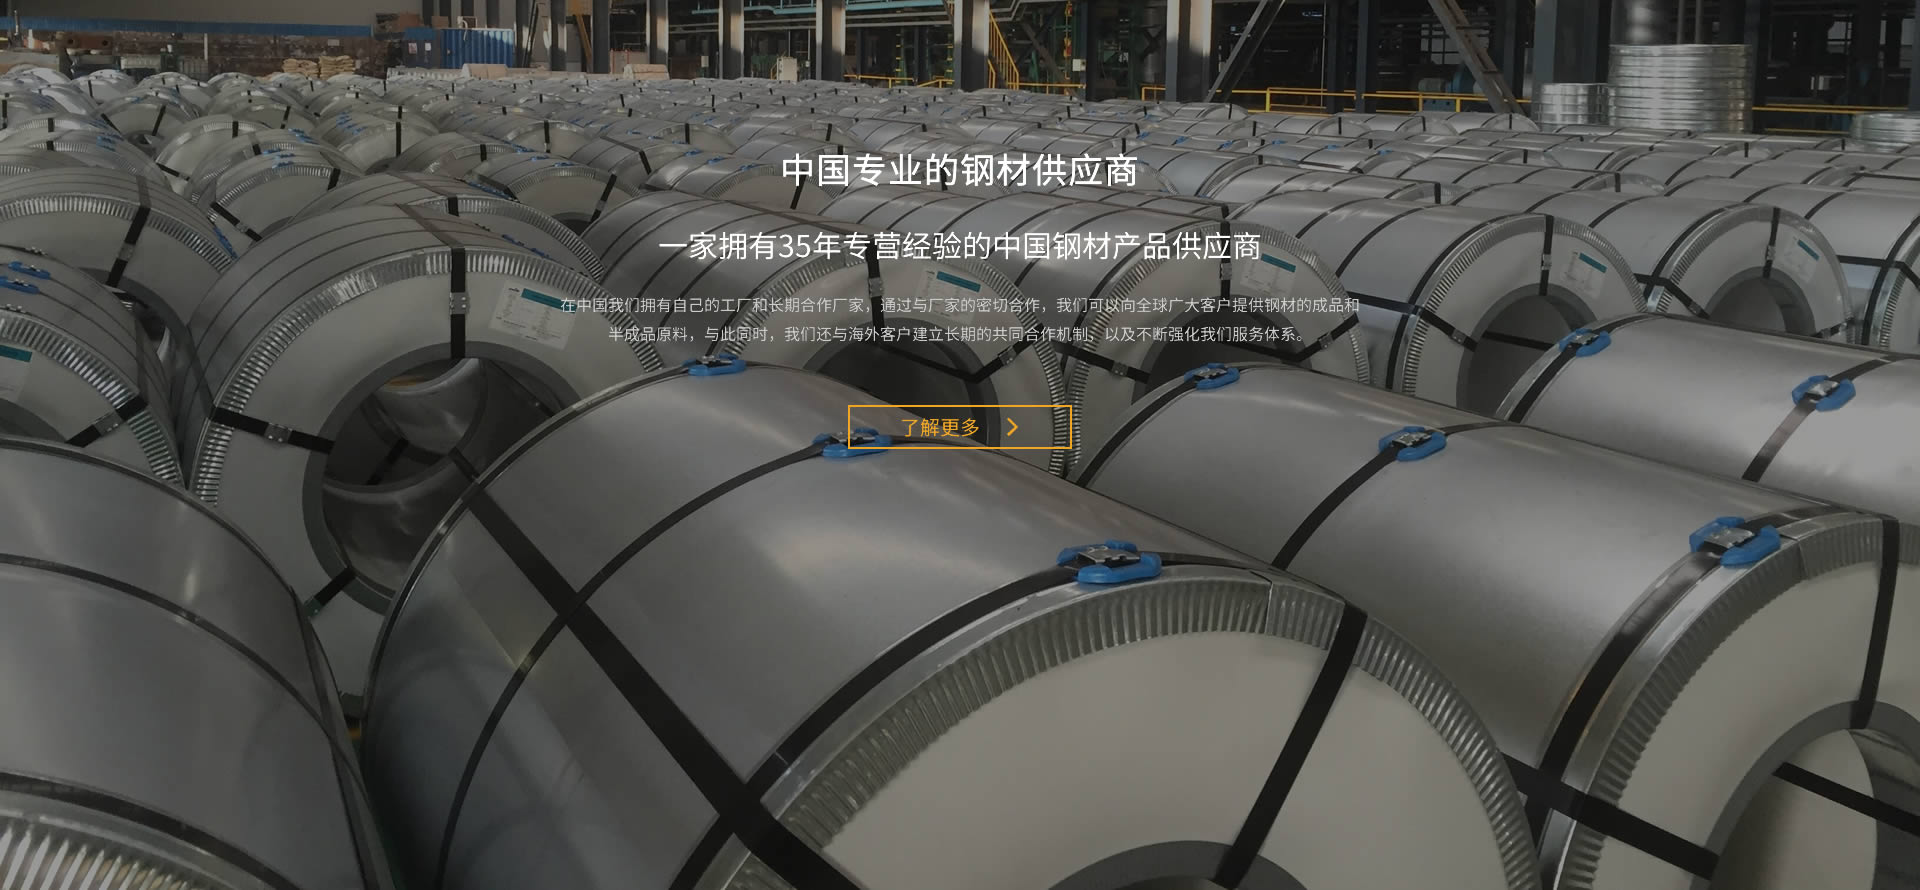 关于当前产品awc万象城·(中国)官方网站的成功案例等相关图片